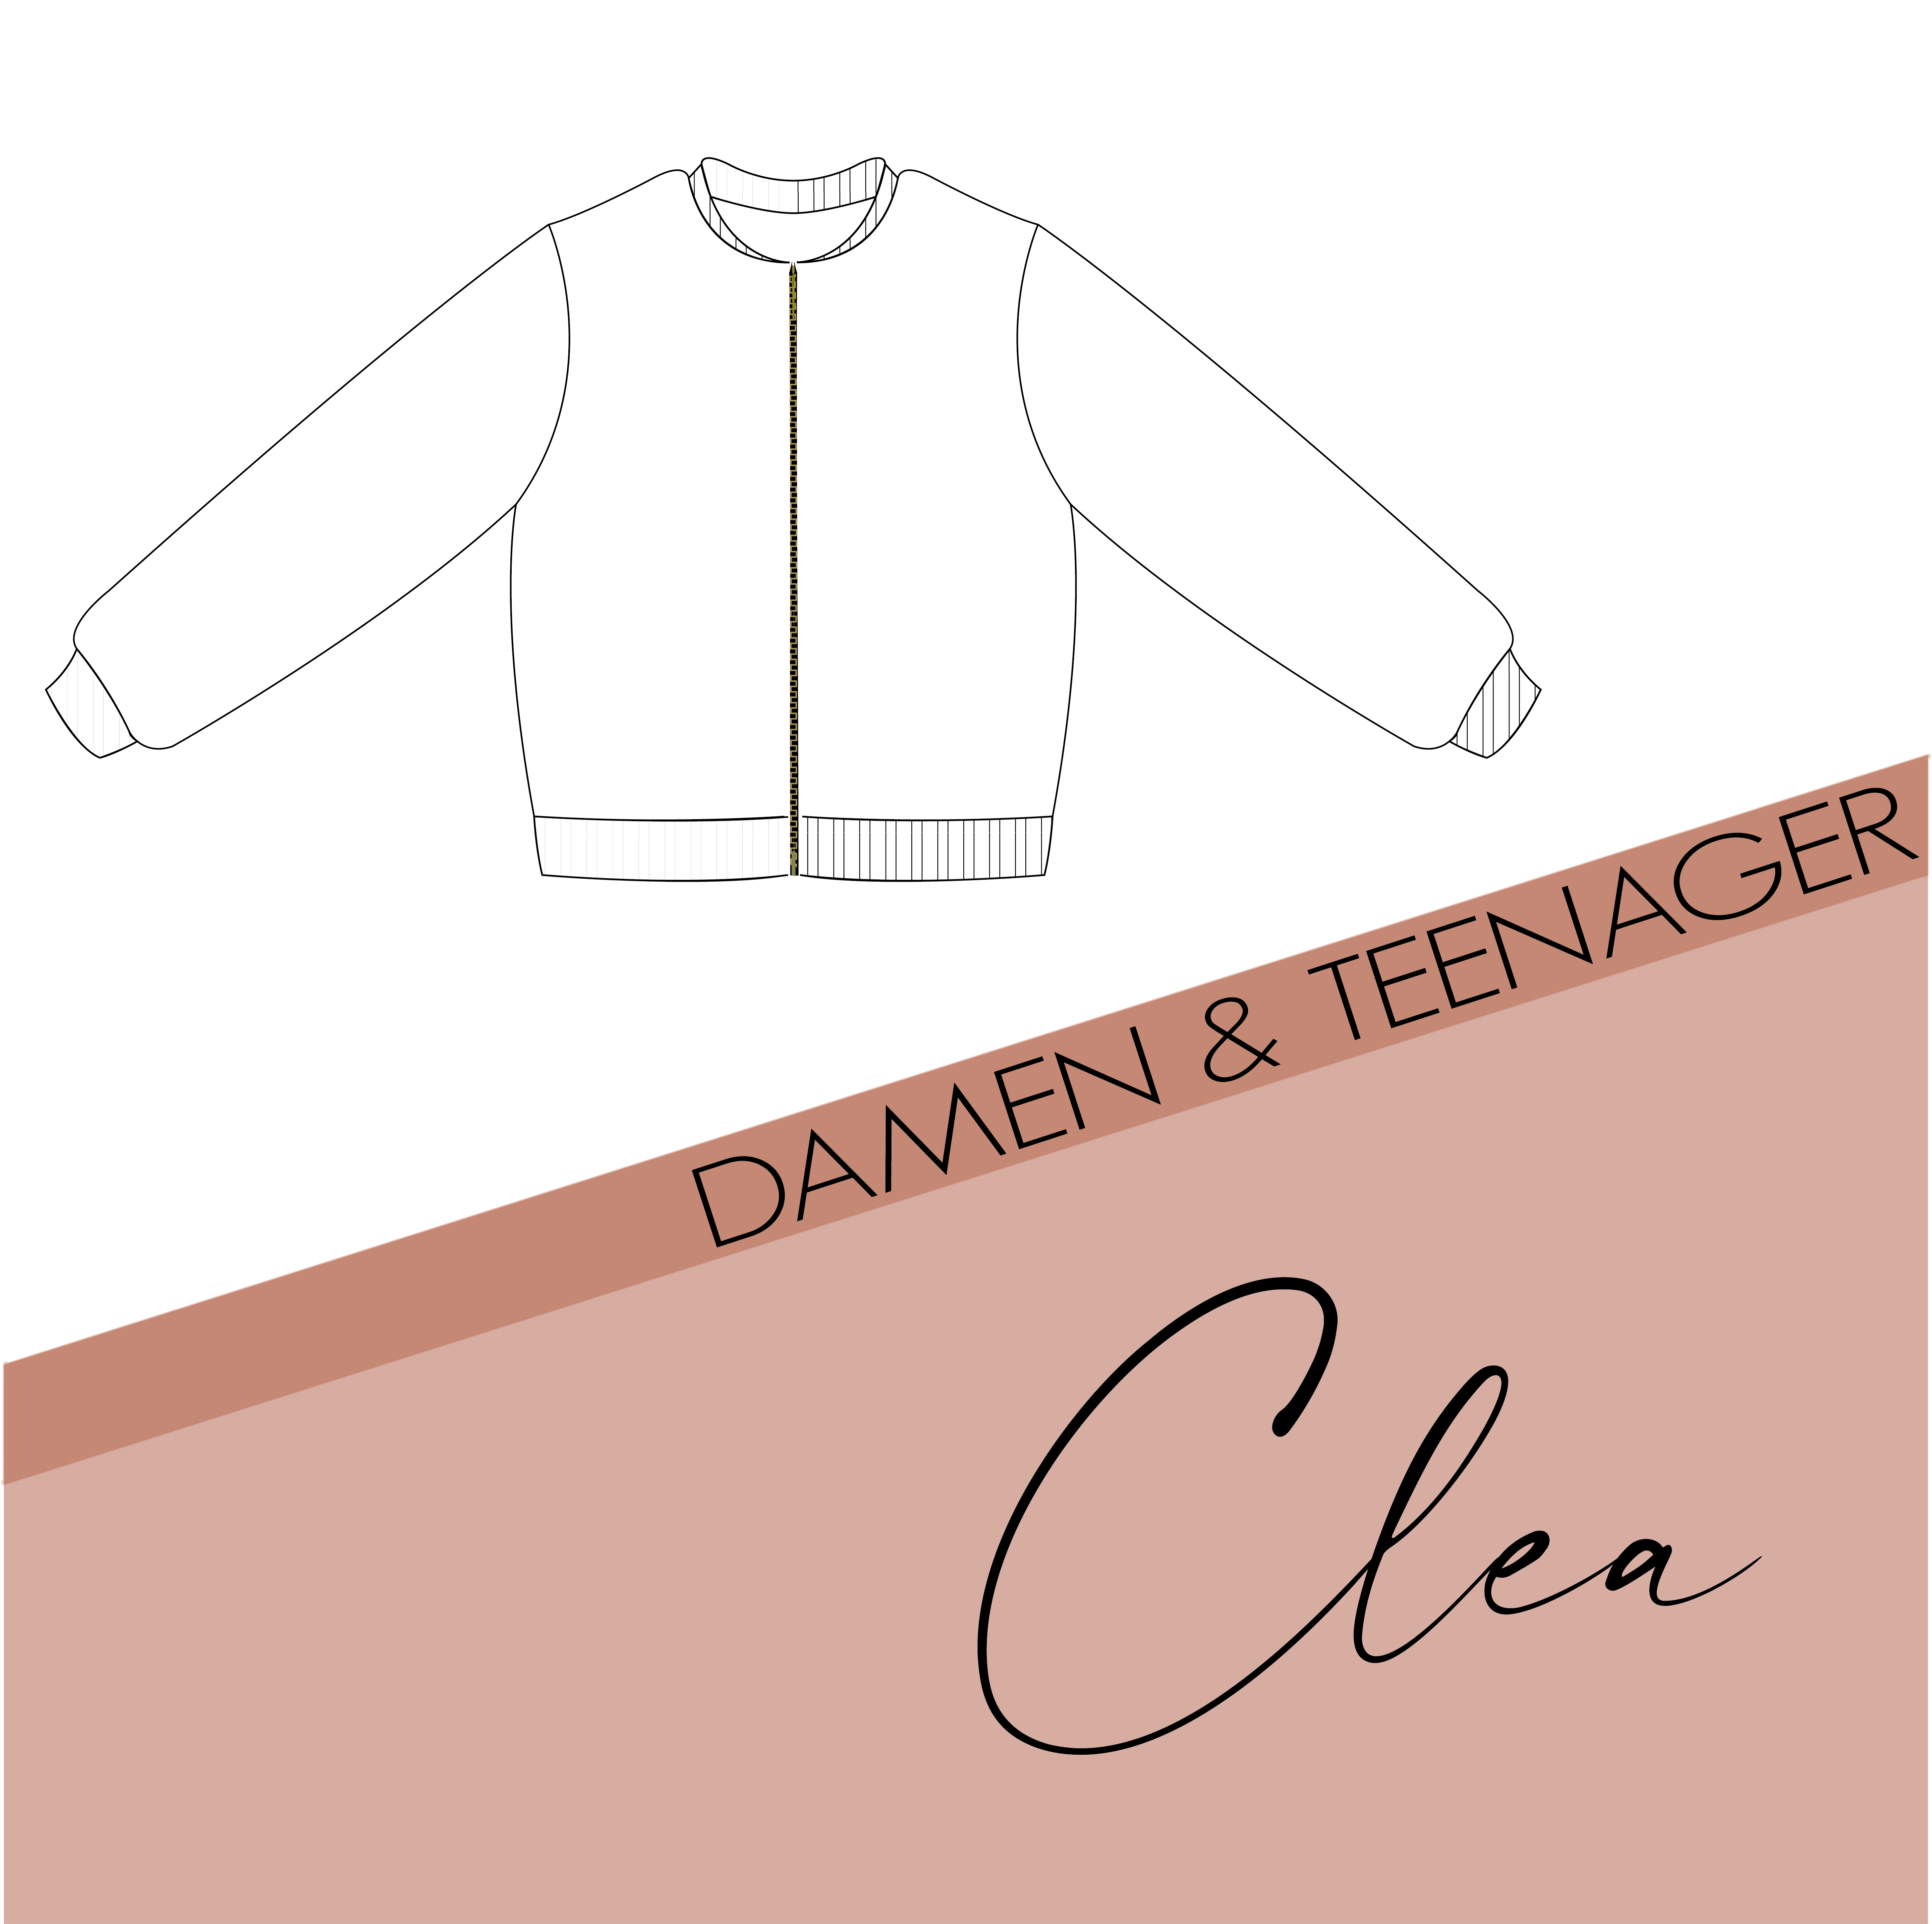 Clea - Damen & Teenager